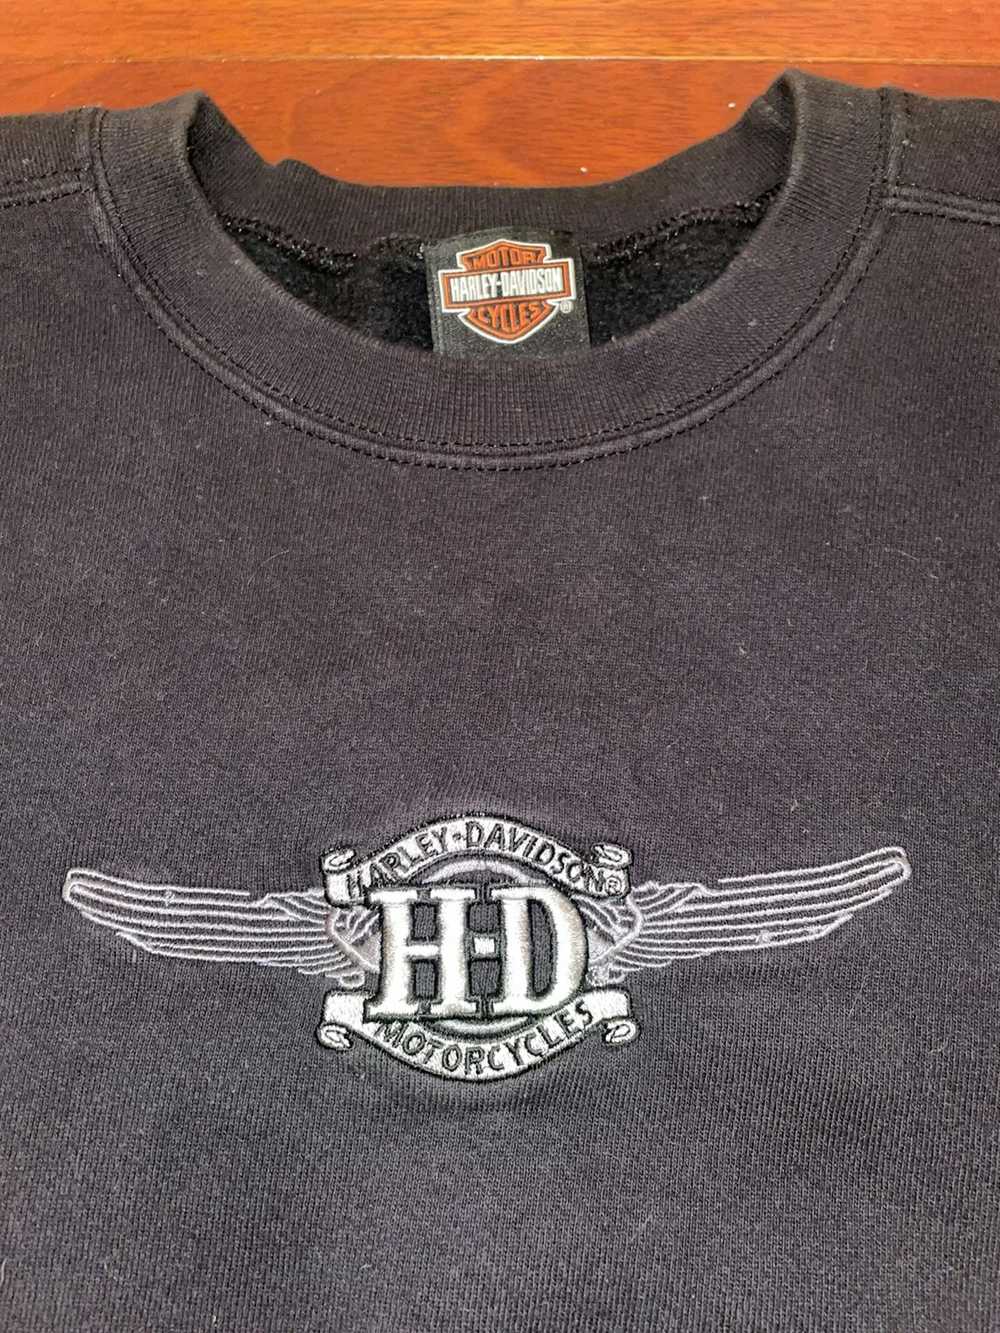 Harley Davidson Vintage Harley Davidson Motorcycl… - image 2